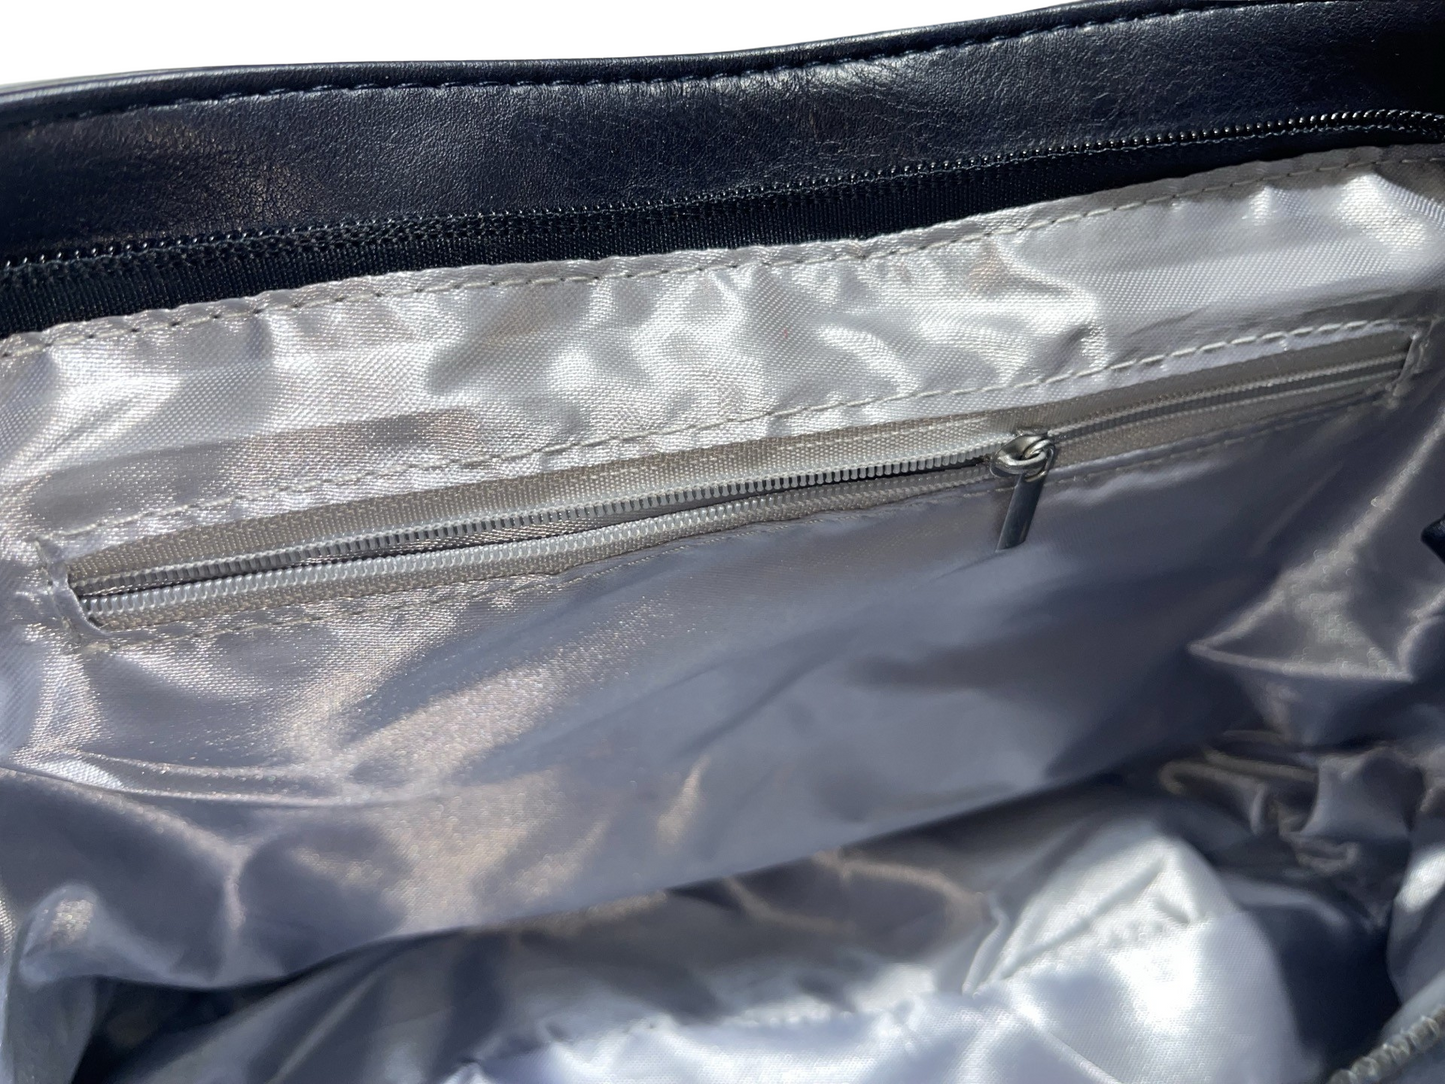 Blau-schwarze Kunstledertasche mit doppeltem Druckknopf und langem Doppelreißverschluss